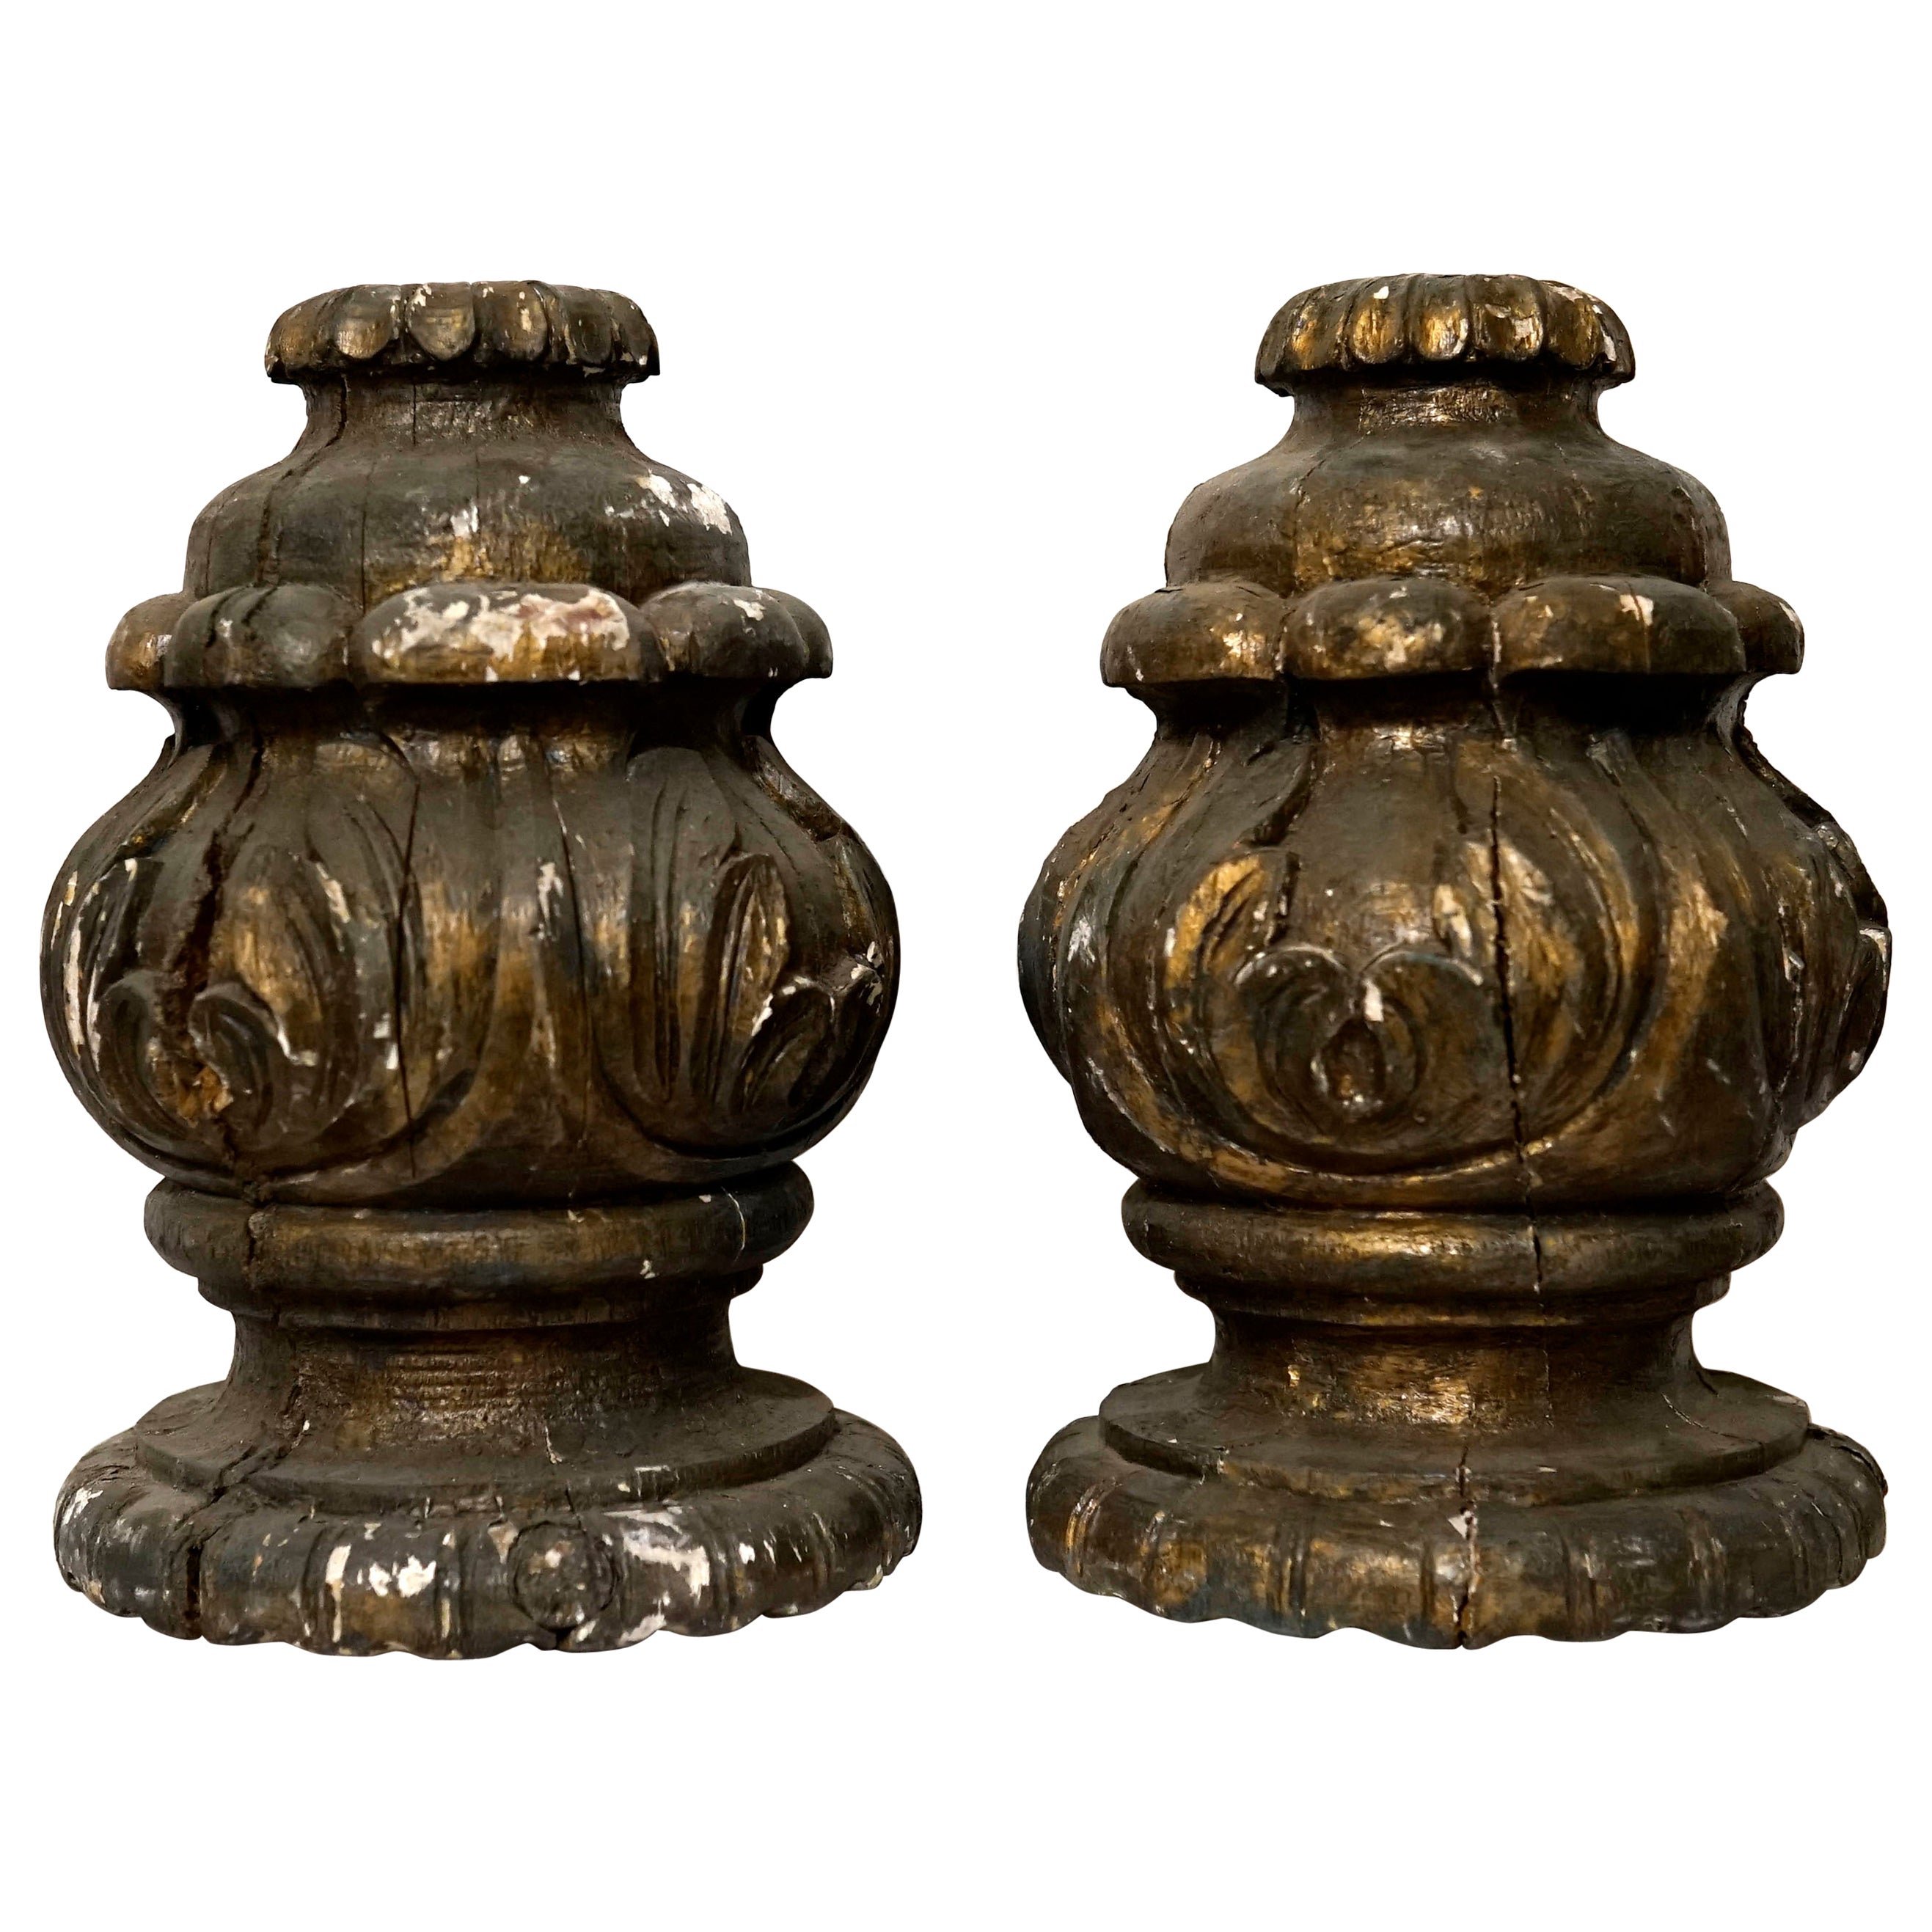 Les détails italiens et les magnifiques feuilles d'acanthe sculptées à la main, conçues dans un mouvement ascendant, font de cette paire de fleurons architecturaux un objet remarquable. Il s'agit de pièces en bois doré datant du milieu ou de la fin